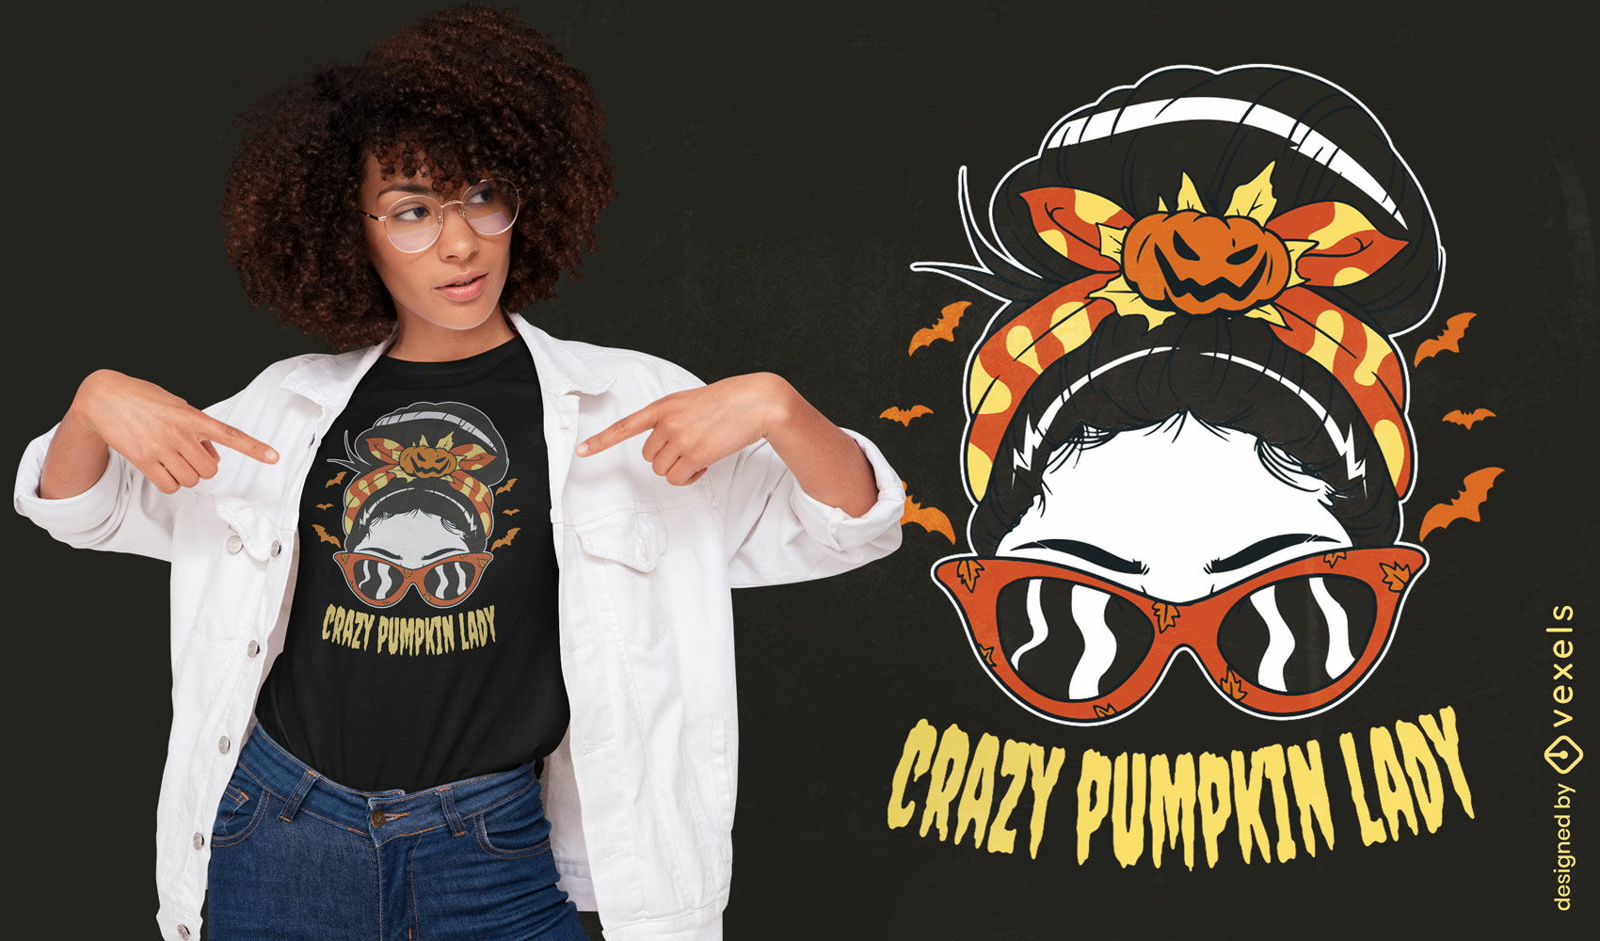 Crazy pumpkin lady Halloween t-shirt design